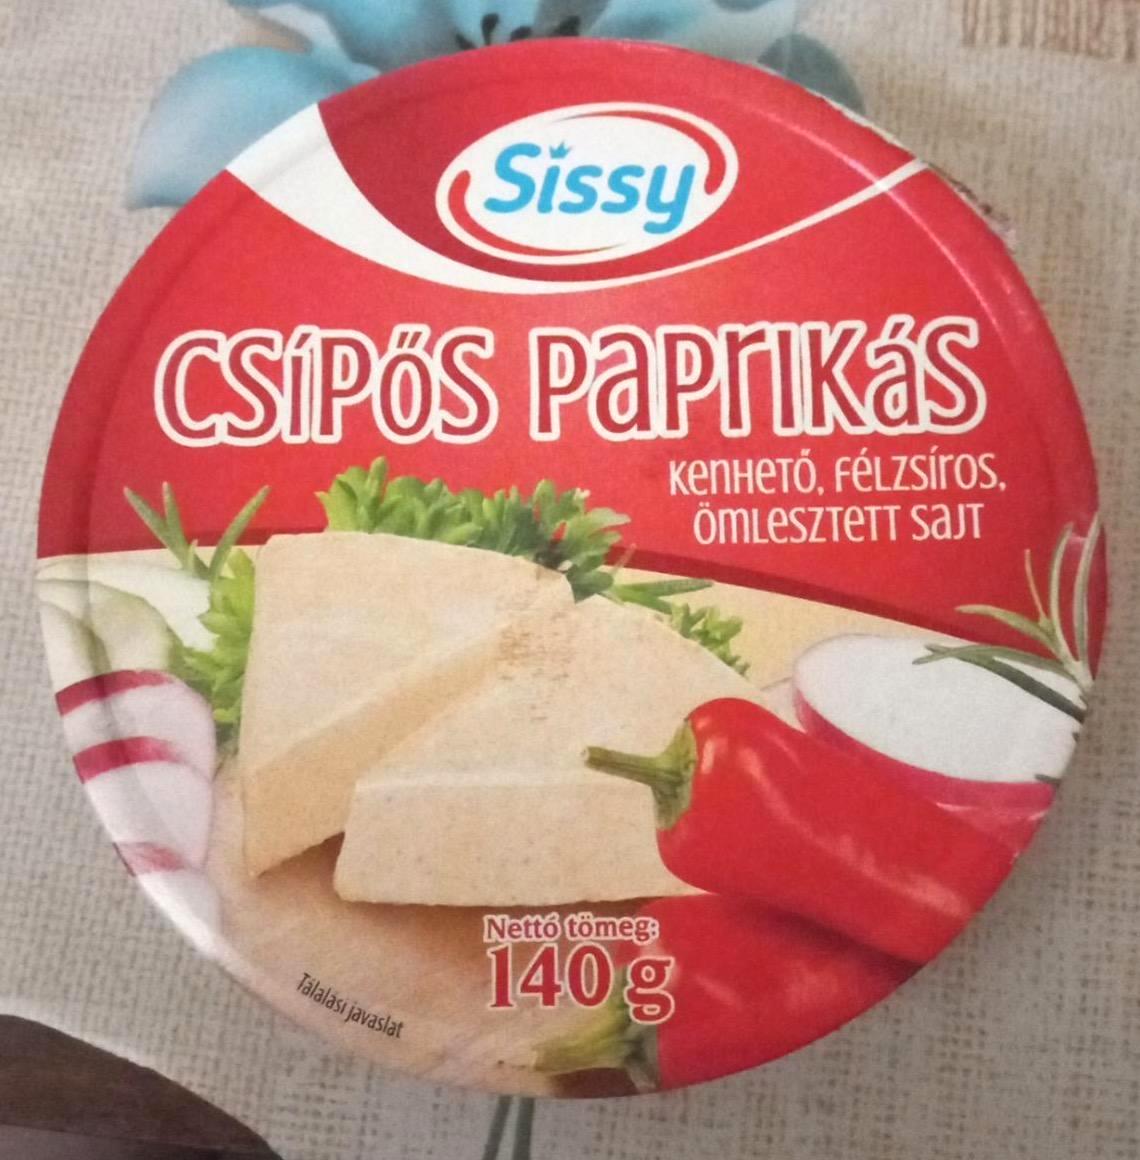 Képek - Csípős paprikás, kenhető, félzsíros ömlesztett sajt Sissy